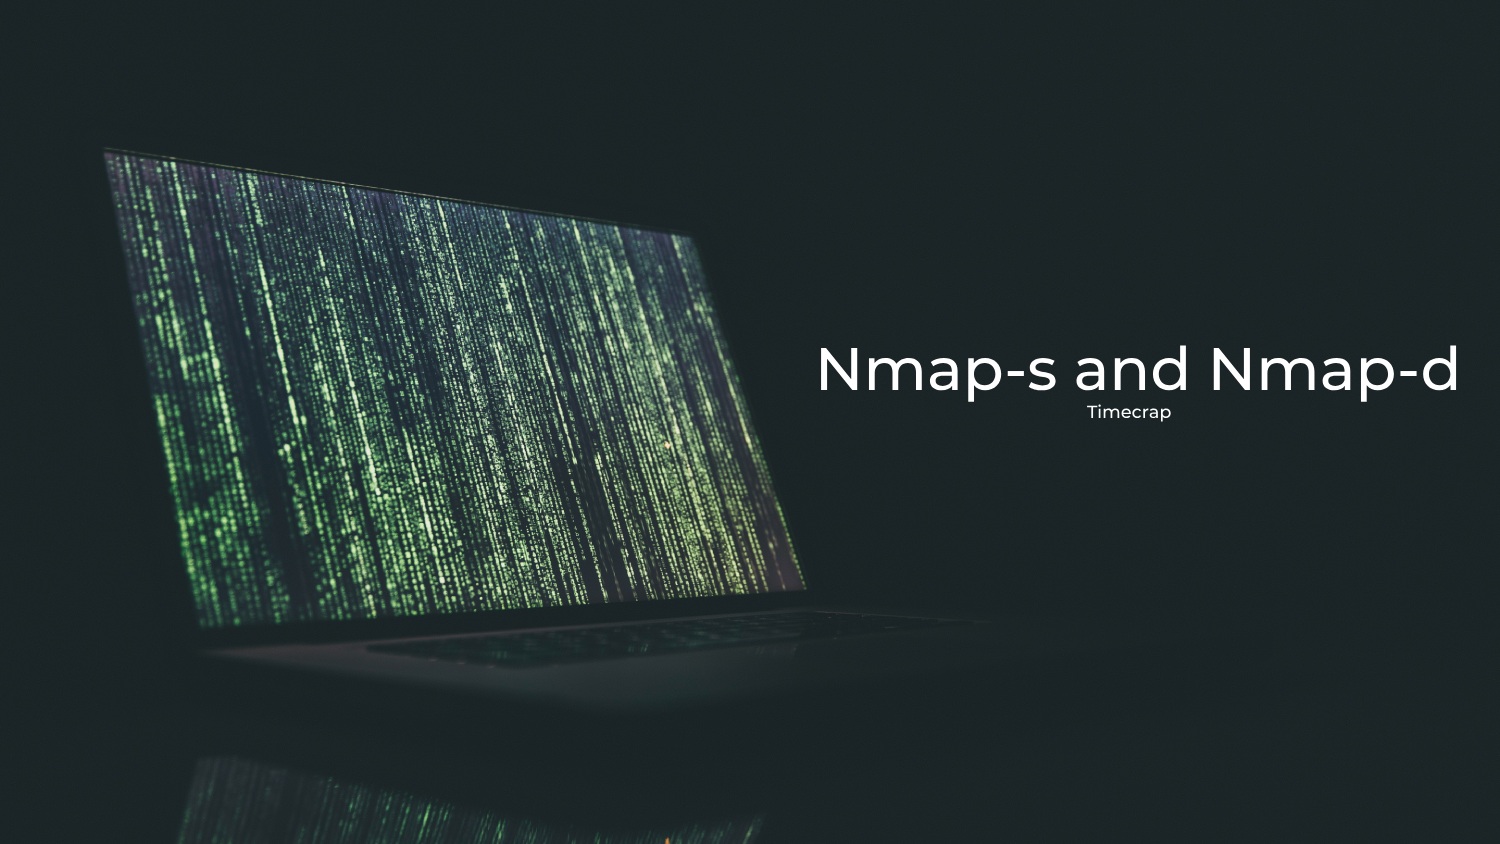 Nmap-s and Nmap-d